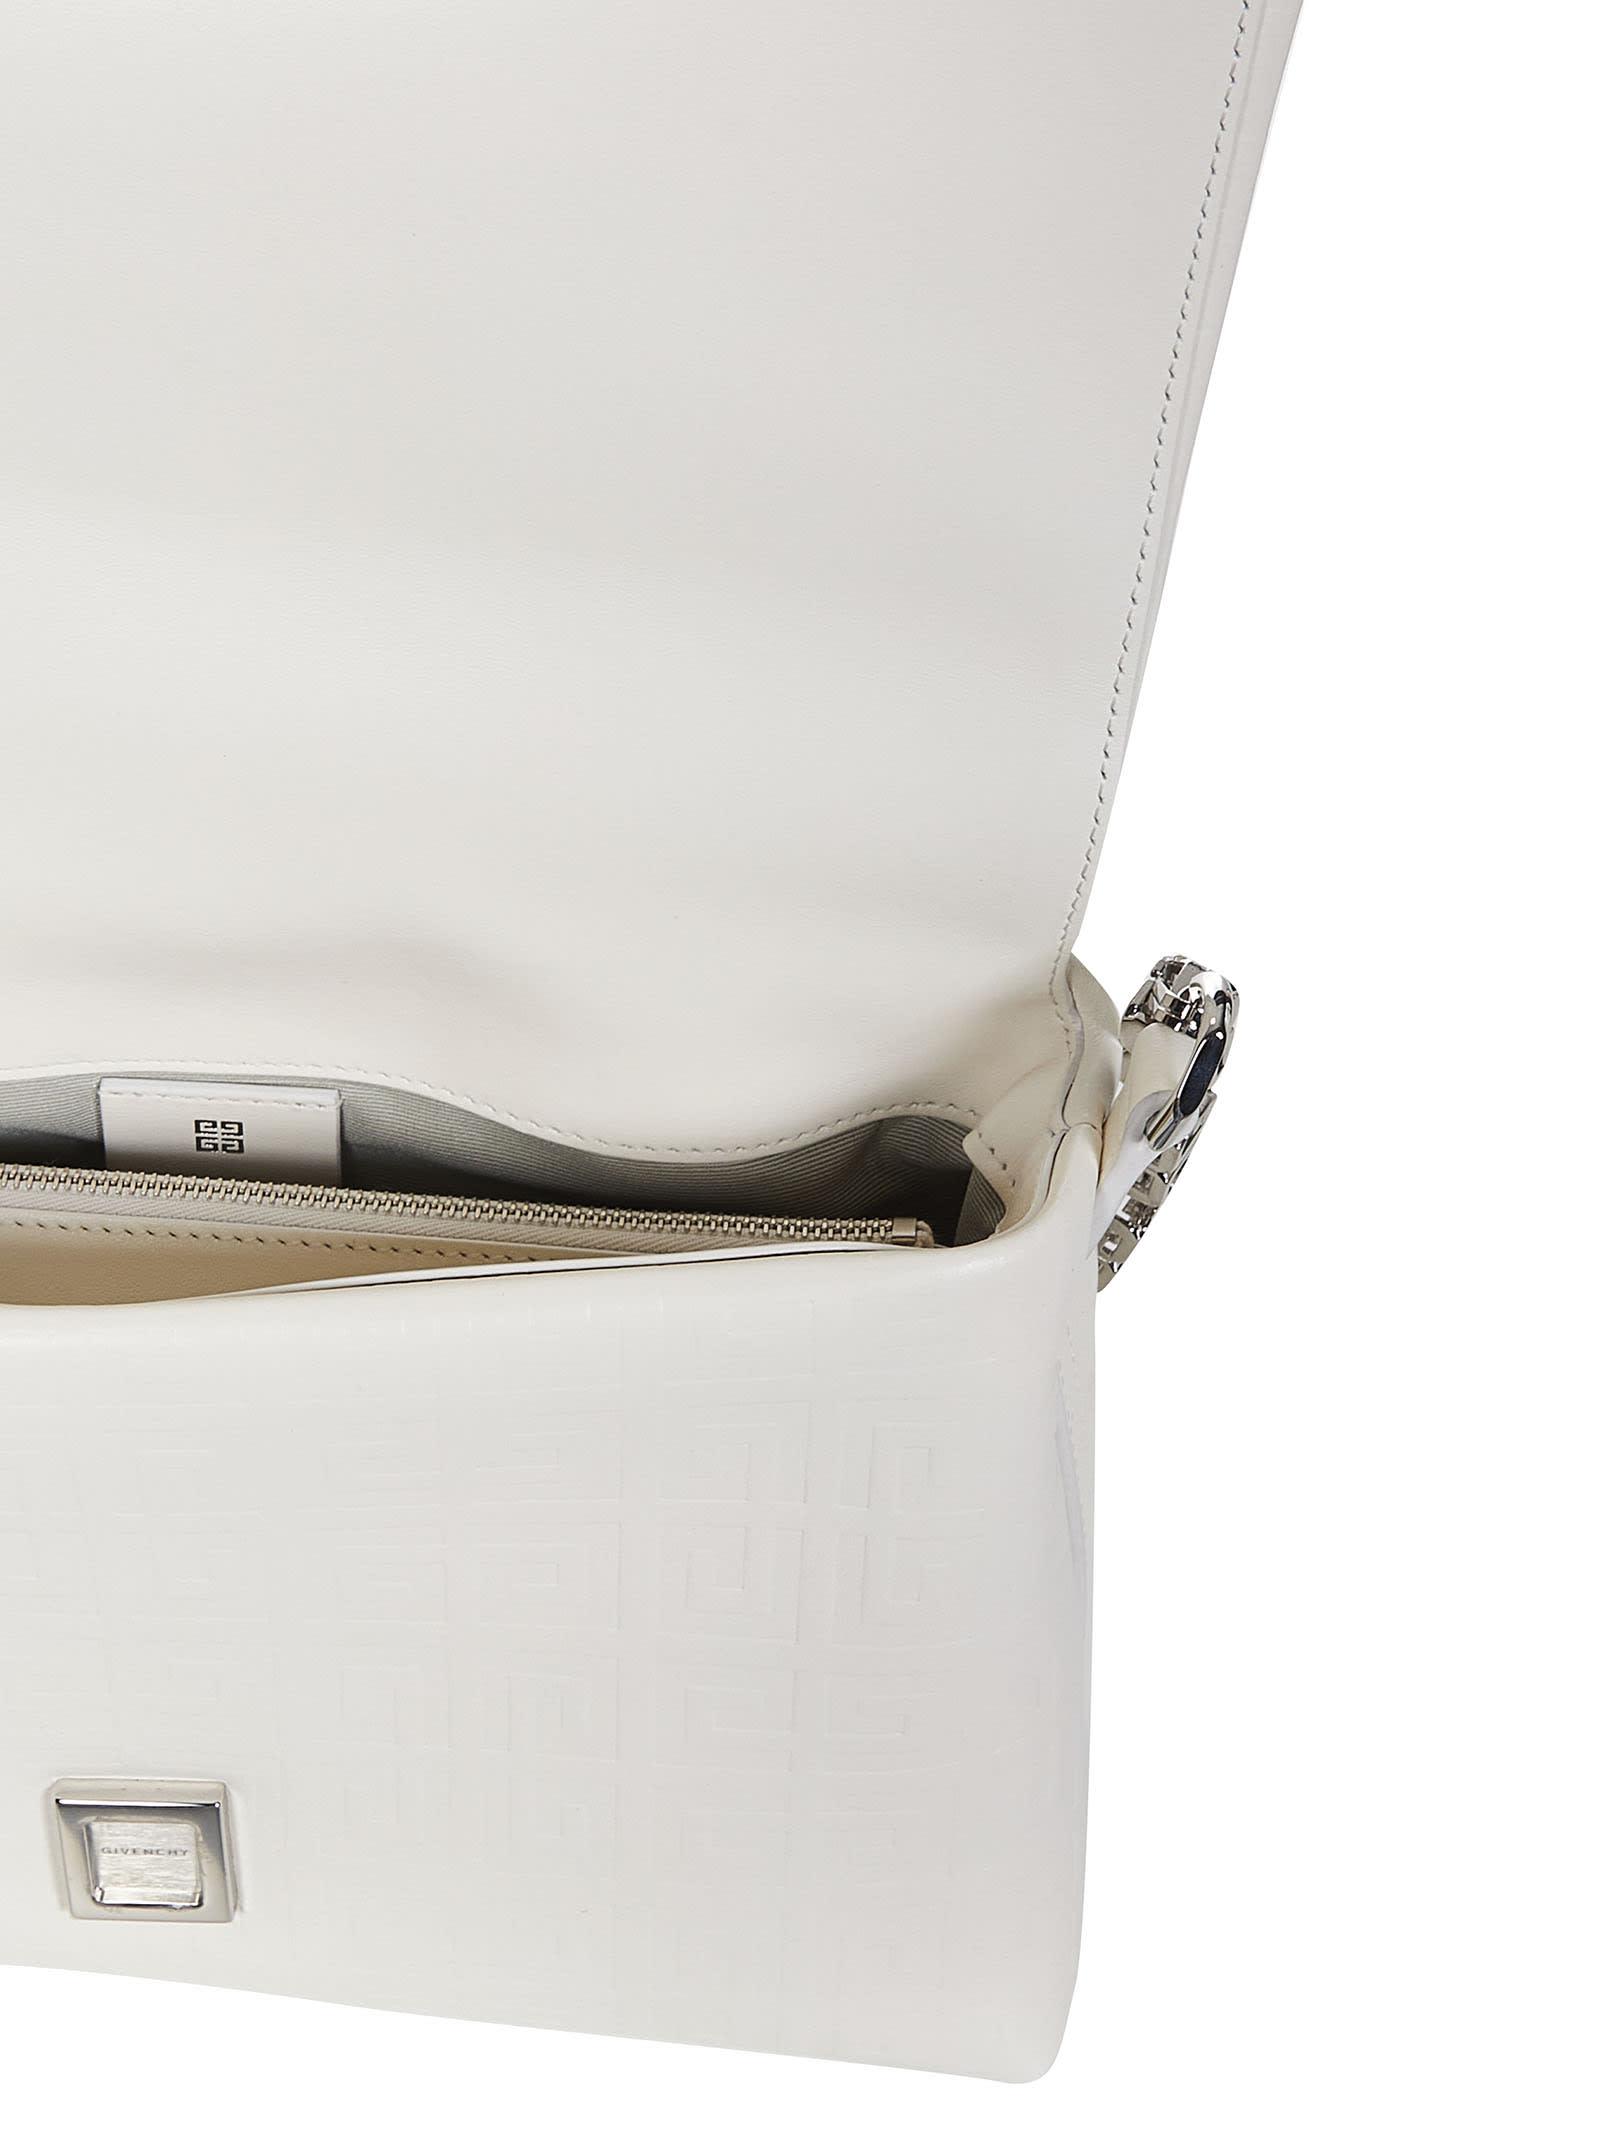 Givenchy 4g Soft Medium Shoulder Bag in White | Lyst